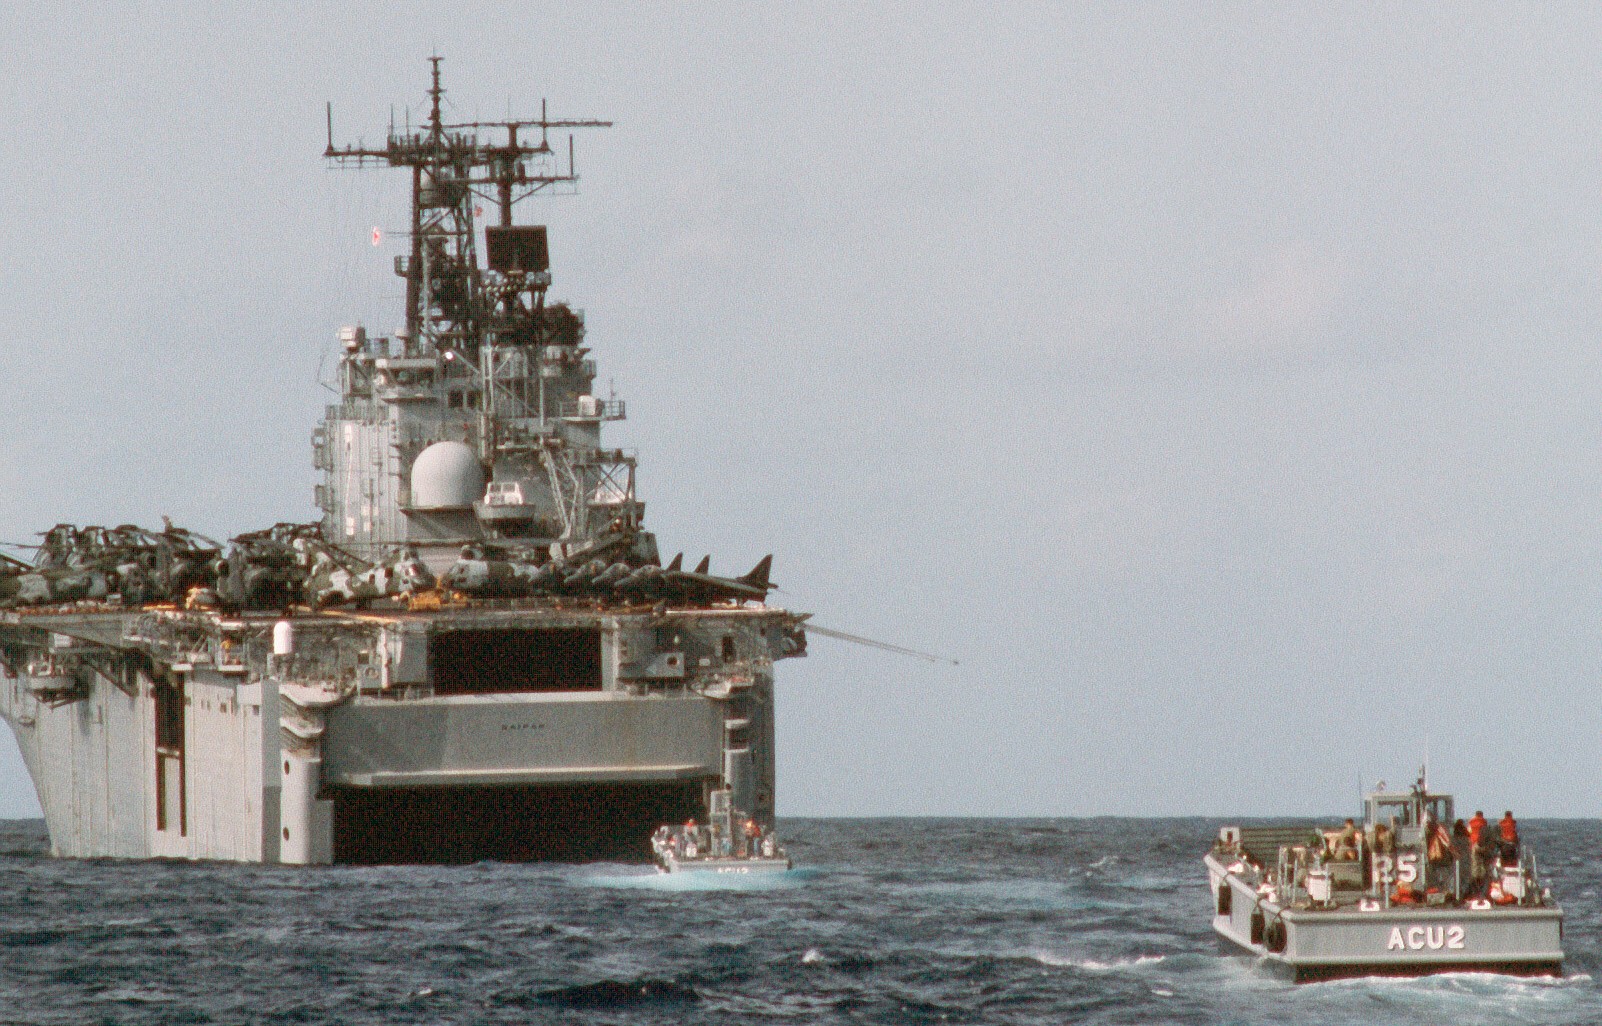 lha-2 uss saipan tarawa class amphibious assault ship us navy 22nd meu hmm-261 usmc operation sharp edge liberia 85